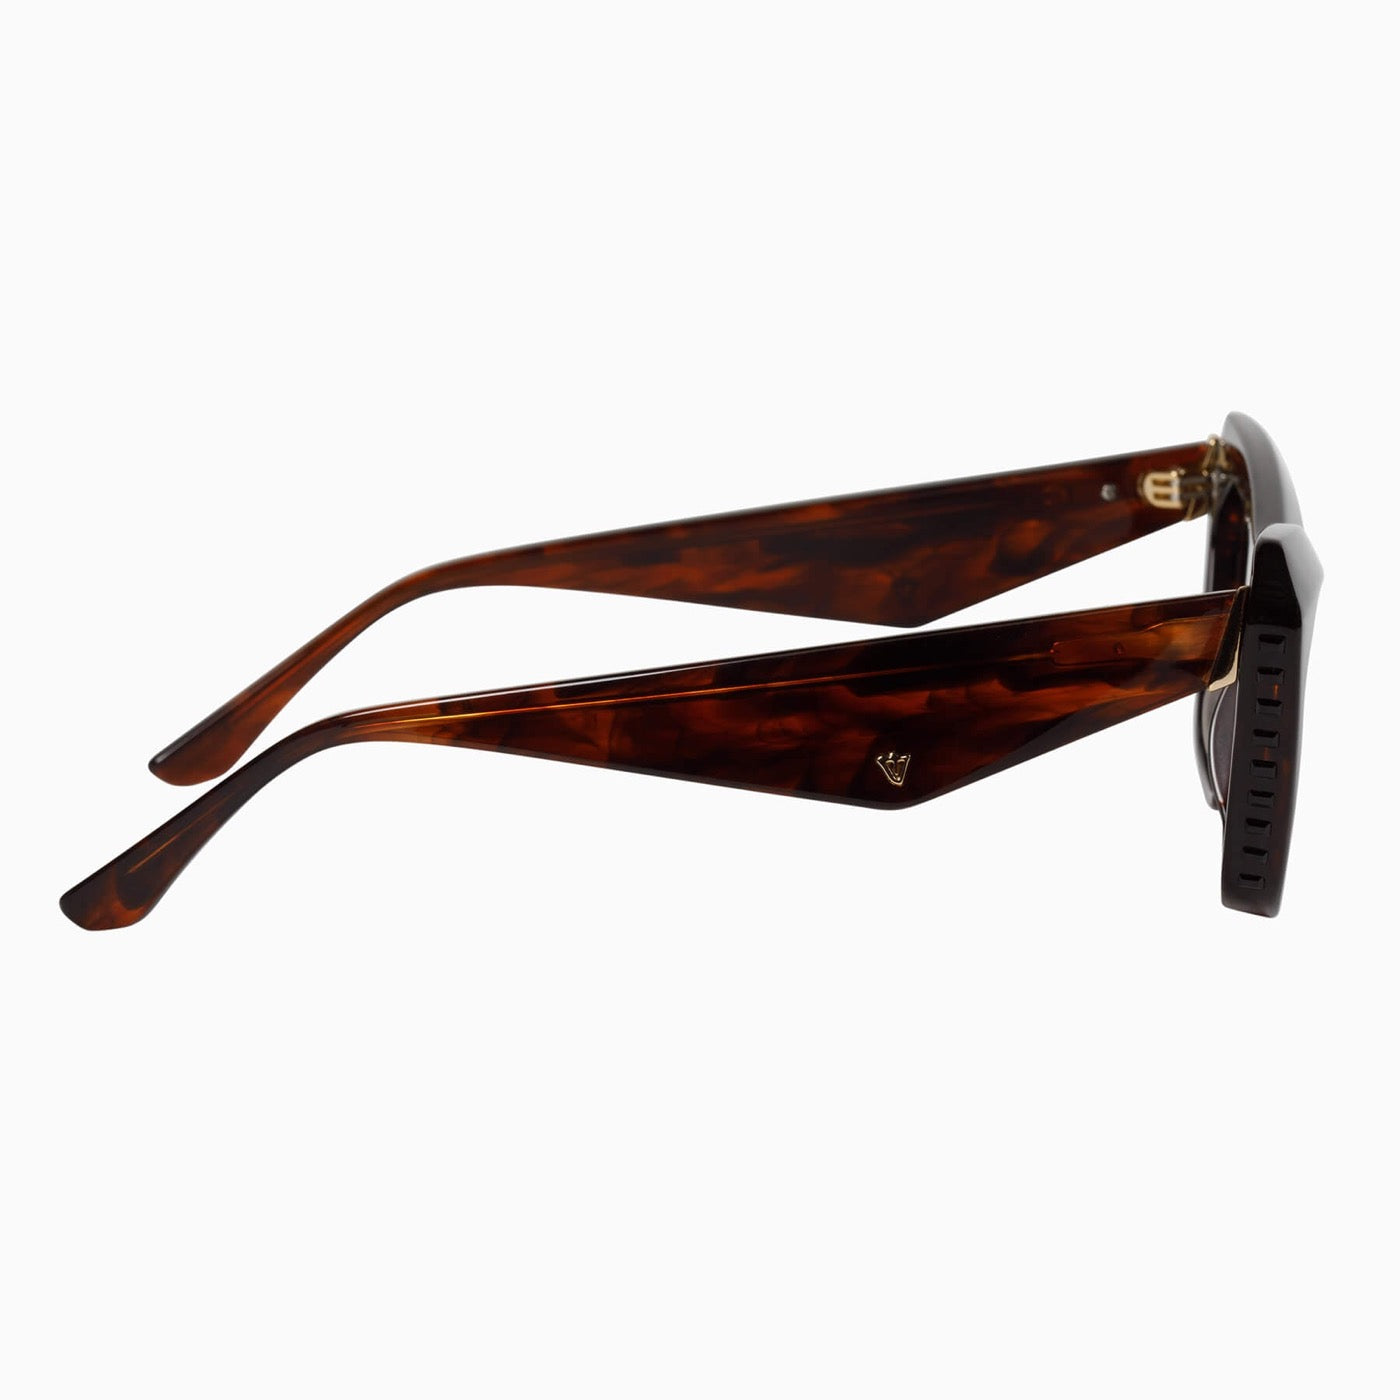 Valley - Piaf Sunglasses - Tobacco Tort Frame / Black Swarovski Crystals / Gold Metal Trim / Light Brown Lens